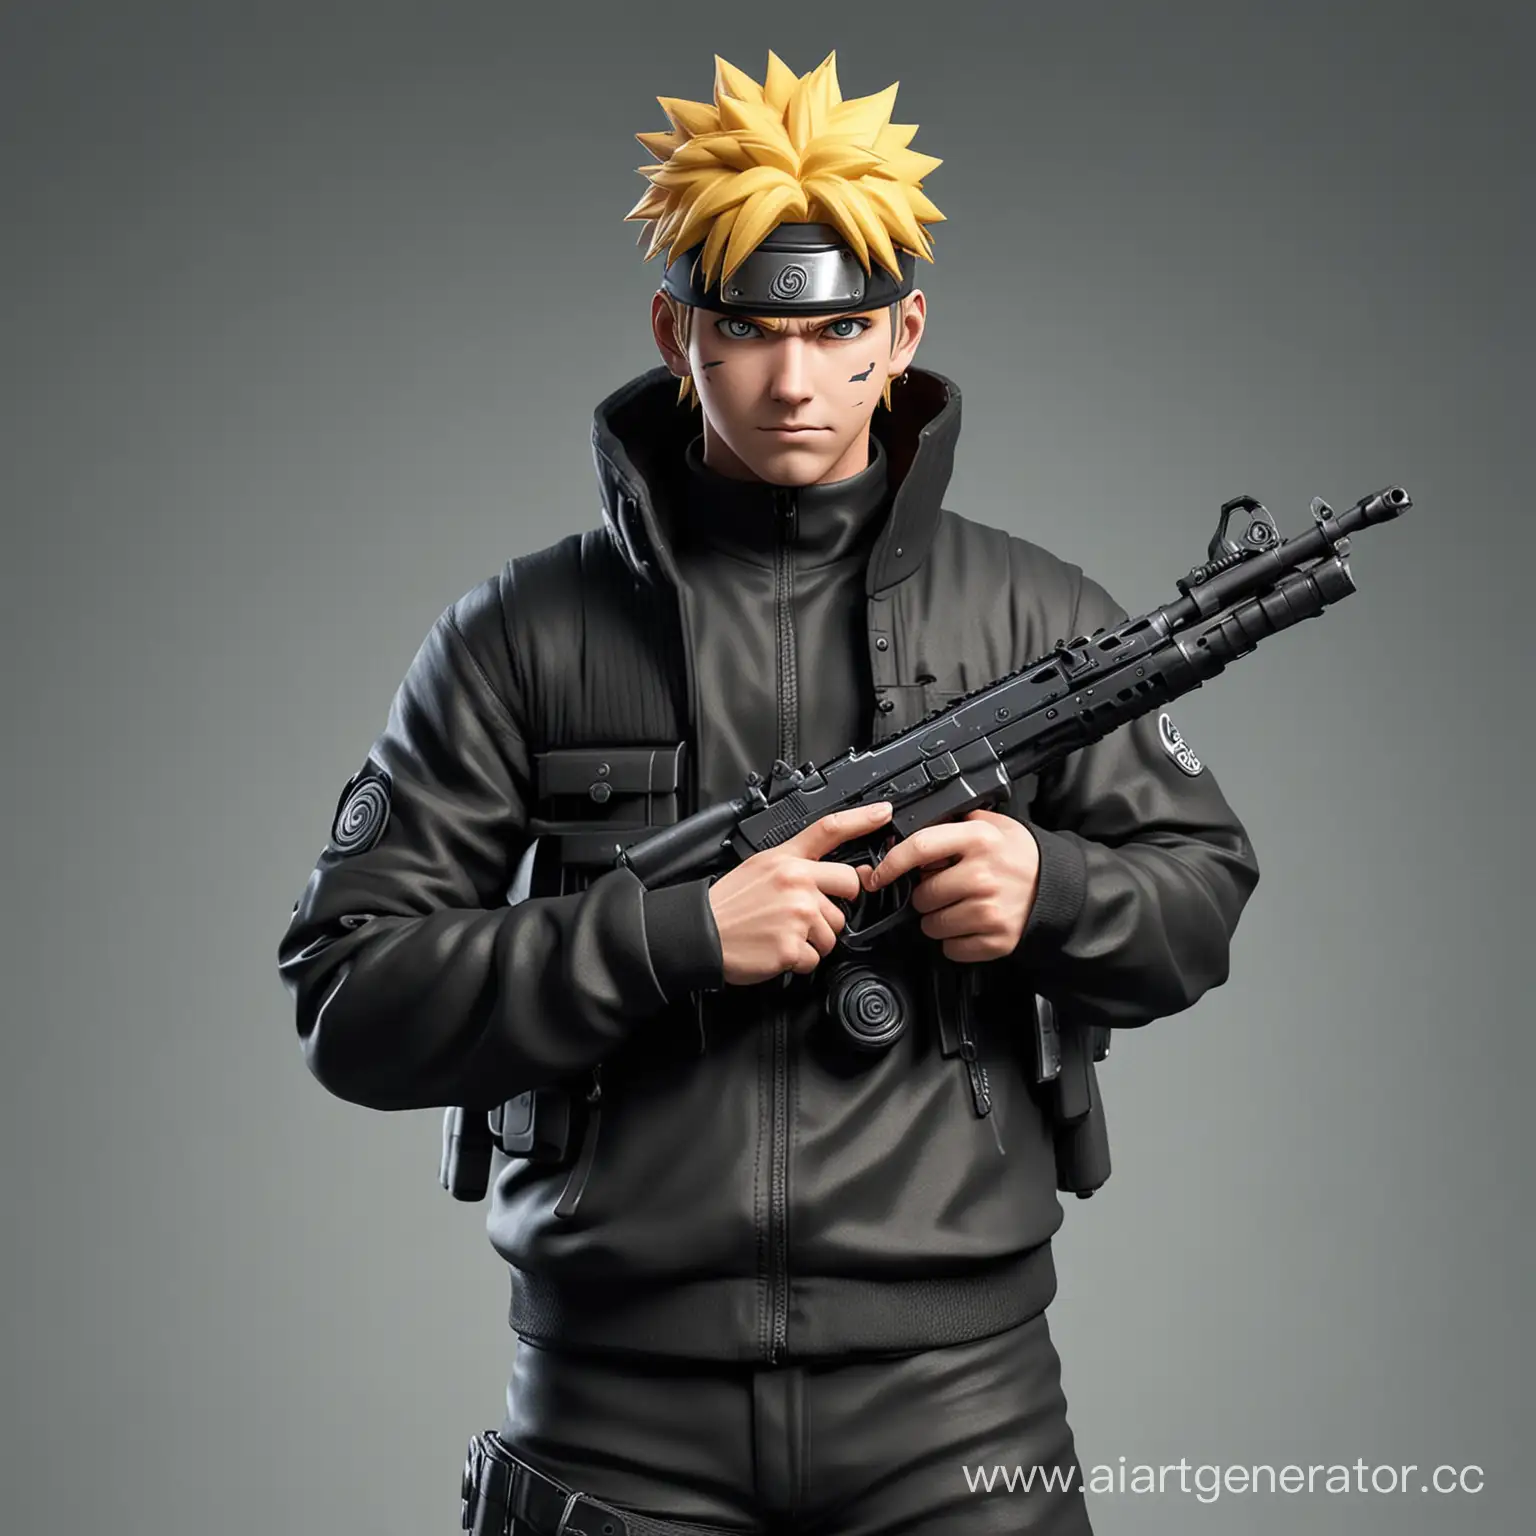 Naruto-Armed-with-a-Gun-in-Realistic-Black-Attire